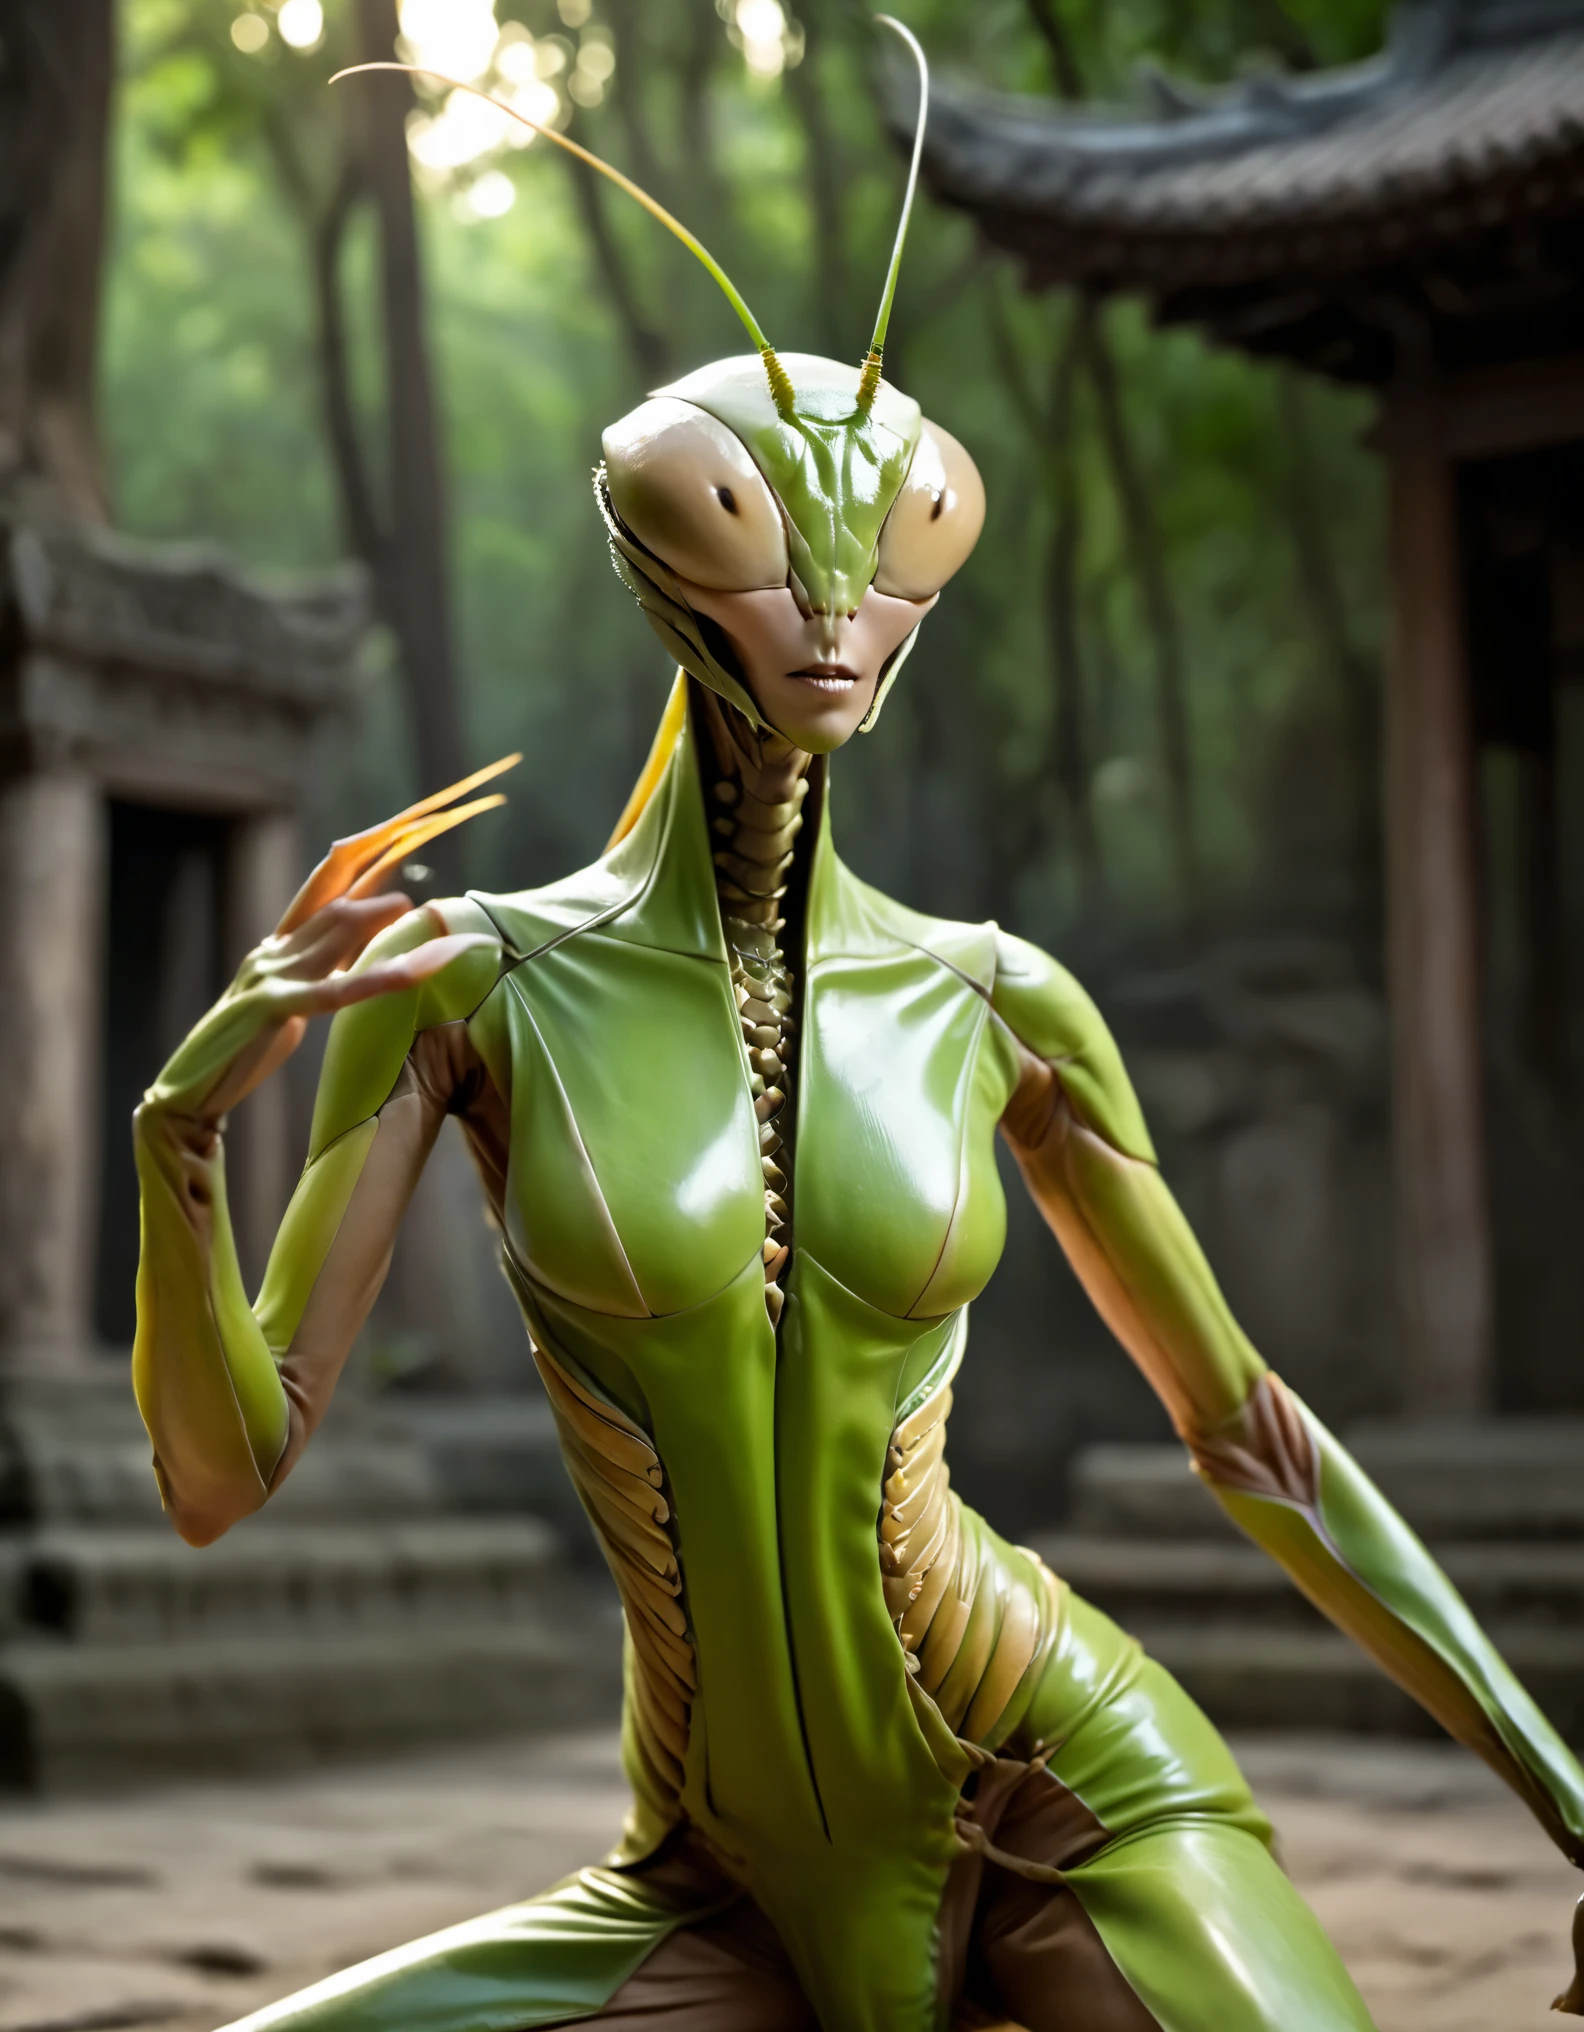 (melhor qualidade, 4k, 8K, Alta definição, Obra de arte: 1.2), (ultra detalhado, realista, Fotorrealista: 1.37), (Nas ruínas de um antigo templo:1.2), (um alienígena híbrido conhecido como "Manti e Humano-Fêmea", Humano Uma fusão aterrorizante de uma mulher e um louva-a-deus: 1.5). (Ela está praticando kung fu louva-a-deus:1.4). Ela tem braços de louva-a-deus em forma de foice, olhos verdes de inseto, detalhes intrincados de olhos e lábios, postura forte e feroz das artes marciais, cores escuras, iluminação dinâmica, artes marciais chinesas tradicionais, e movimentos fluidos. Ela está praticando. Fundo antigo escuro das ruínas do templo, golpes delicados e poderosos, determinação e concentração, precisão e agilidade, Força and grace. Seu treinamento em artes marciais é harmoniosamente combinado, e seu cabelo esvoaçante aumenta seu senso de movimento e aumenta sua calma mental. No meio da intensidade, o olhar de um monstro para o inimigo, o kung fu de um louva-a-deus. Seu corpo está cheio de graça, Força, energia e potência. (desfoque de movimento: 1.2) (Uma aura dourada está subindo de seu corpo). (sem olhos, Sem nariz, monstro estranho, Mutant, rosto deformado, rosto feio, Rosto de louva-a-deus: 1.6), (Alienígena misterioso: 1.4)